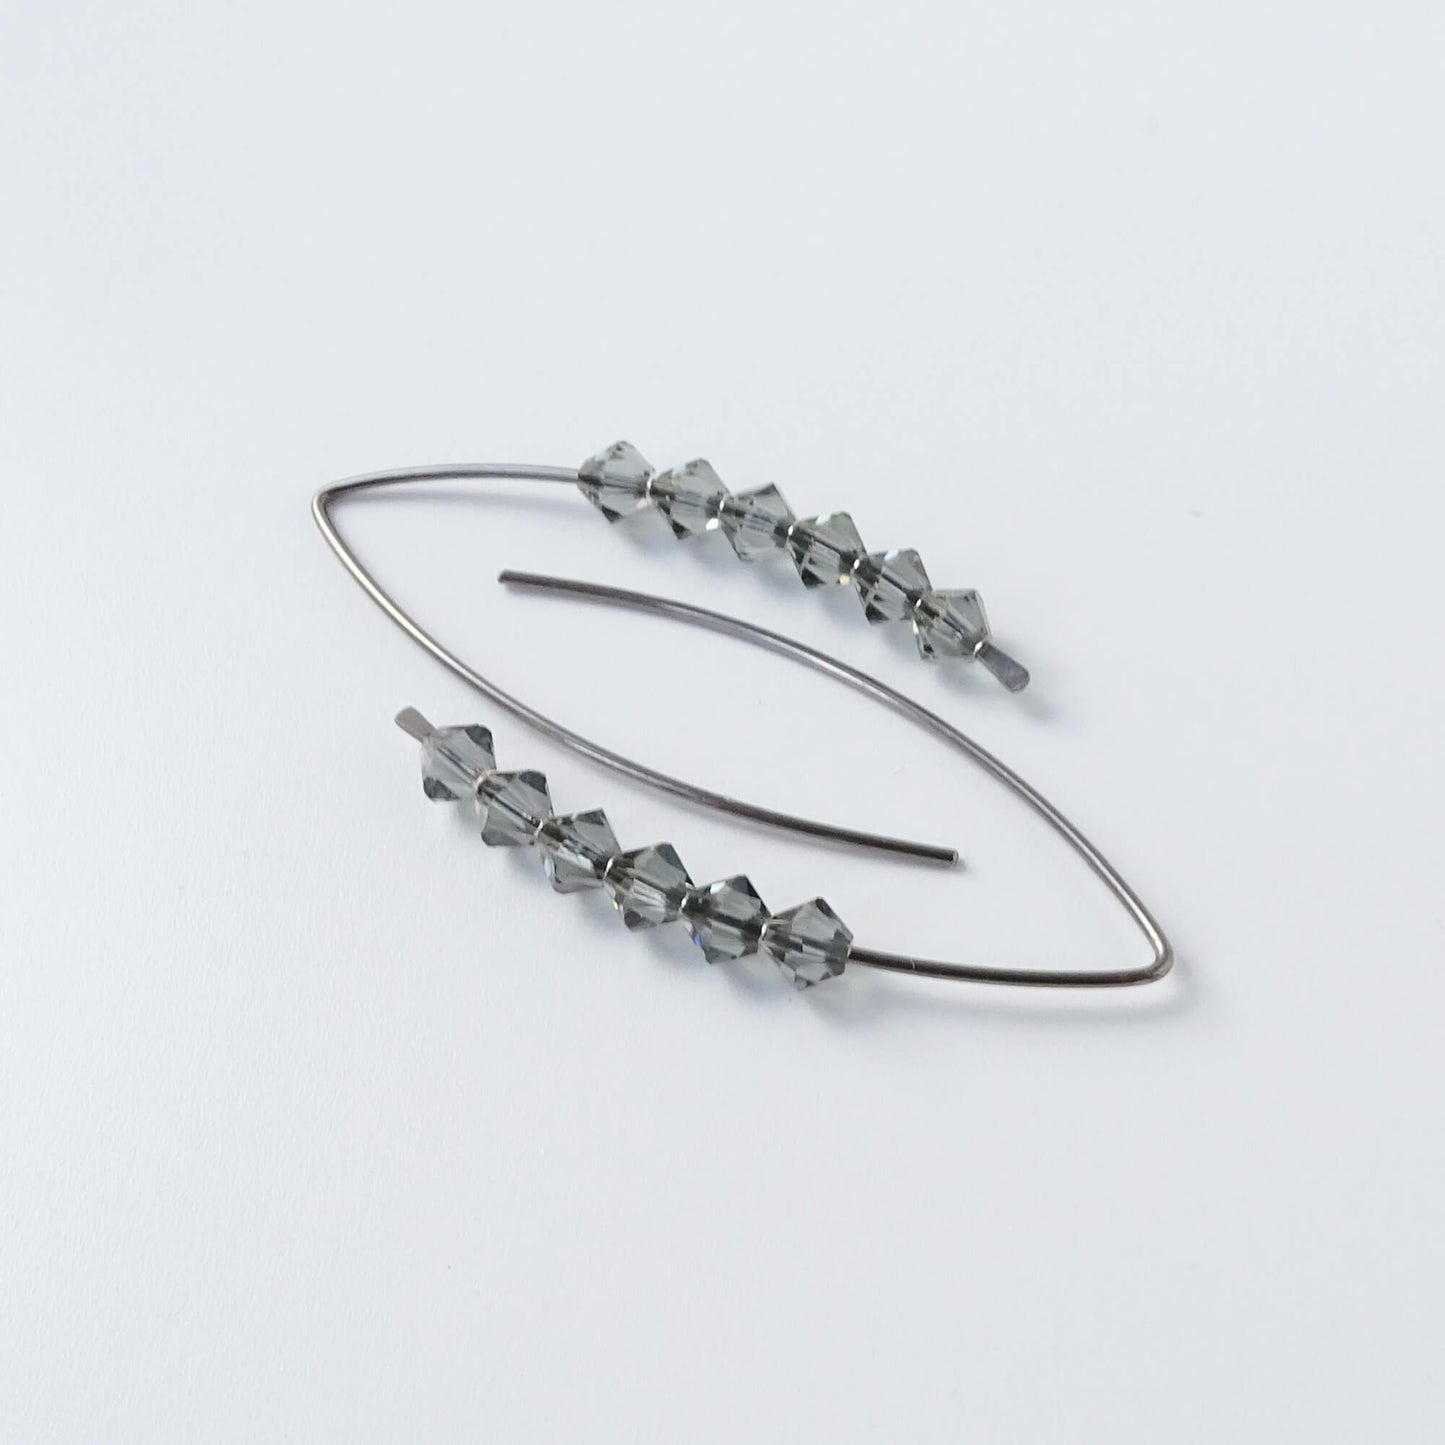 Niobium Earrings with Black Diamond Crystals